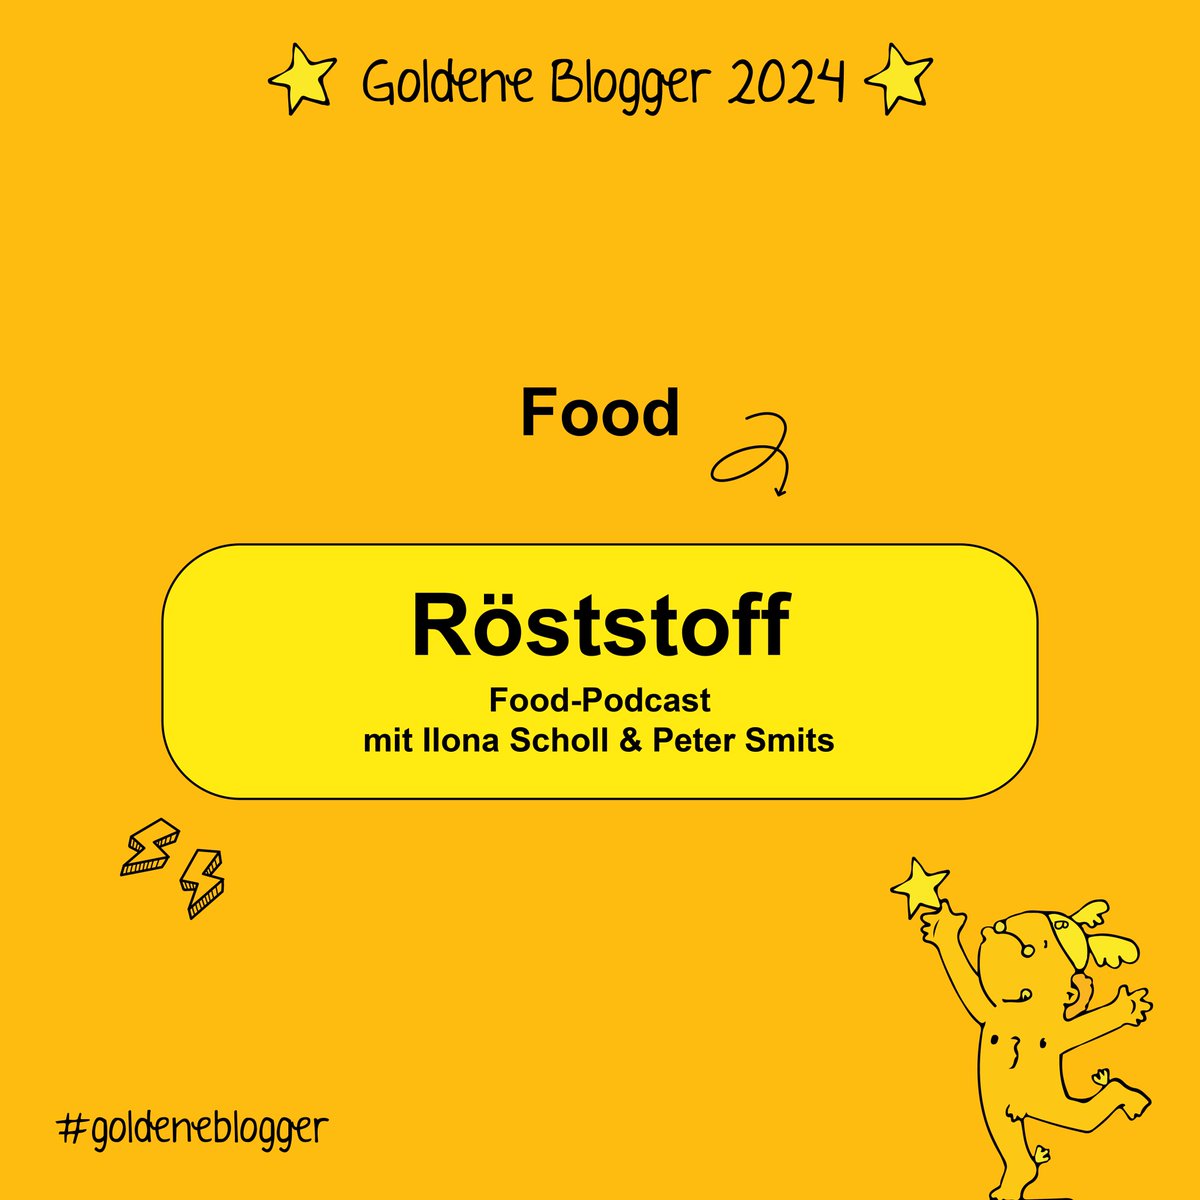 Die besten Inspirationen für auf den Tisch liefert in diesem Jahr @roeststoff und bekommt dafür den Goldenen Blogger in der Kategorie 'Food'. 🍽️  #GoldeneBlogger